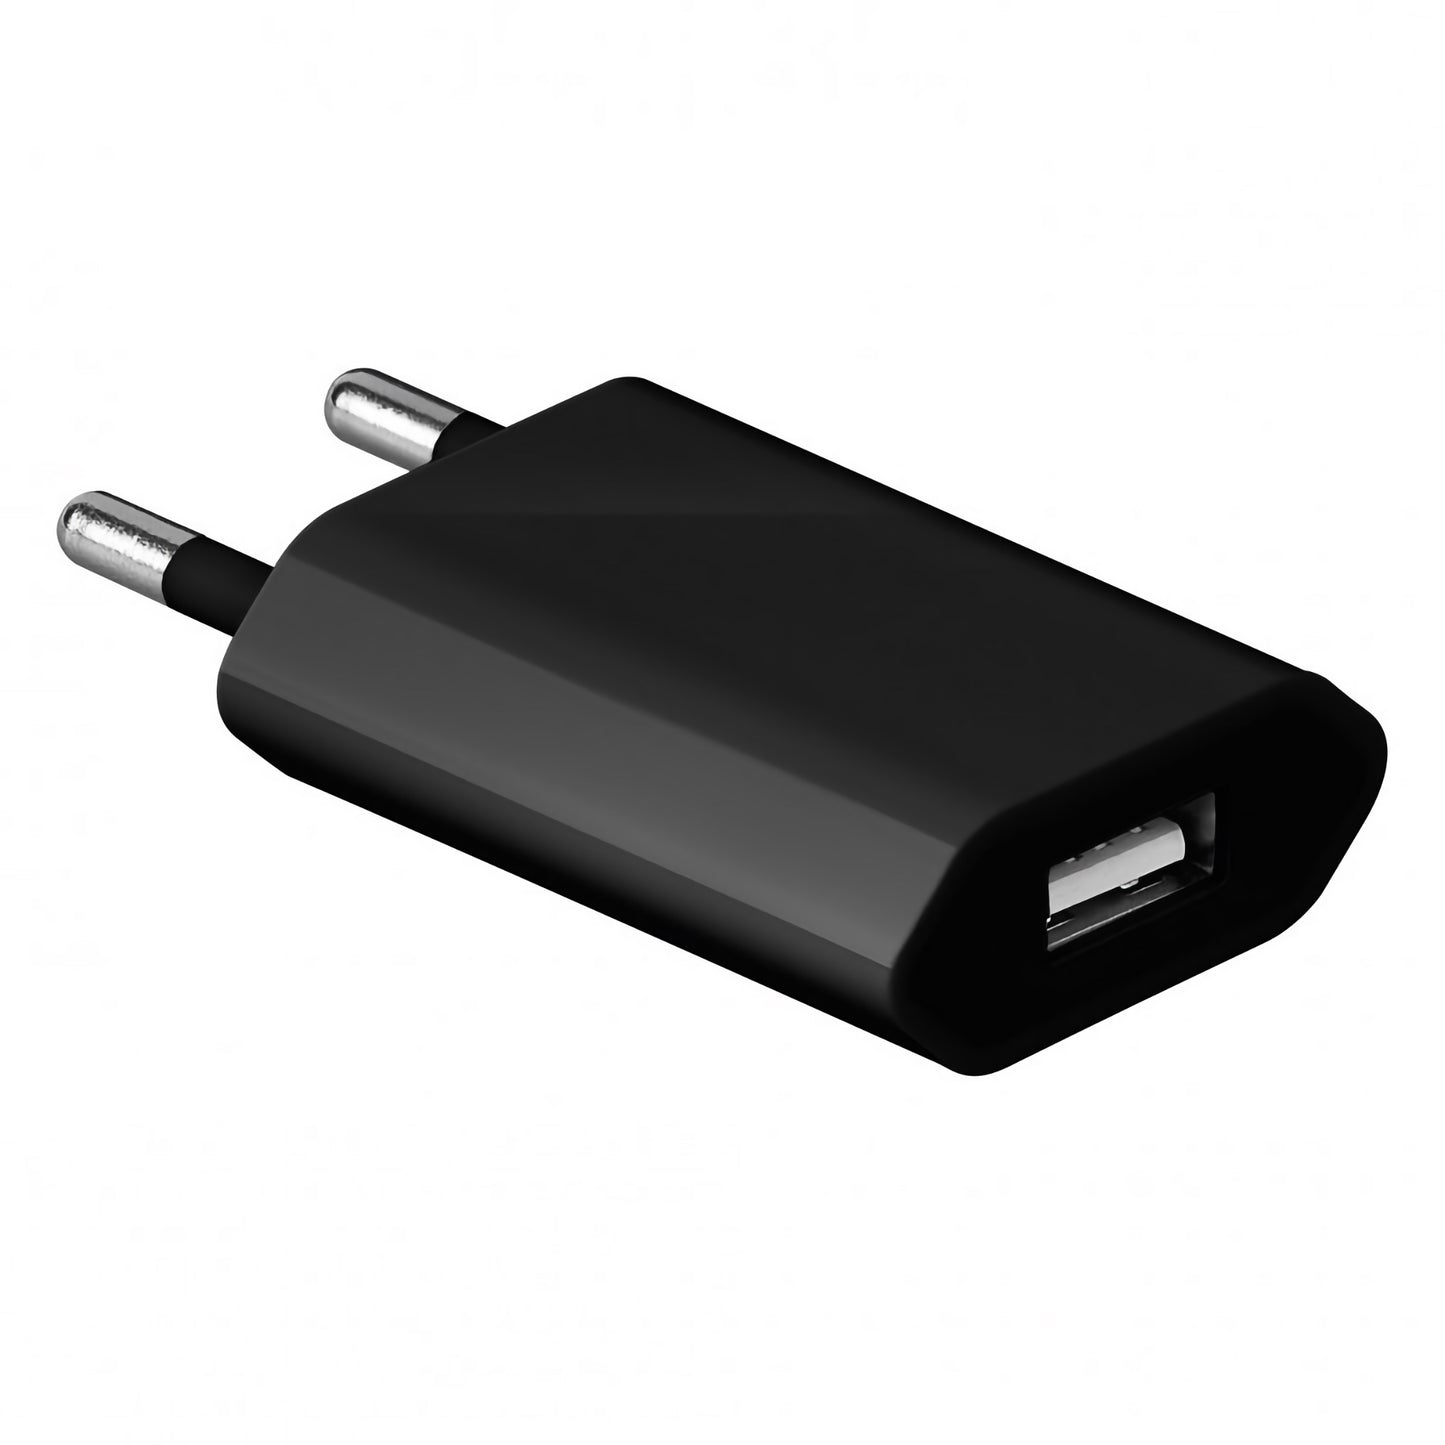 USB-Ladegerät für iPhone, Apple Watch und Smartphone 5 W